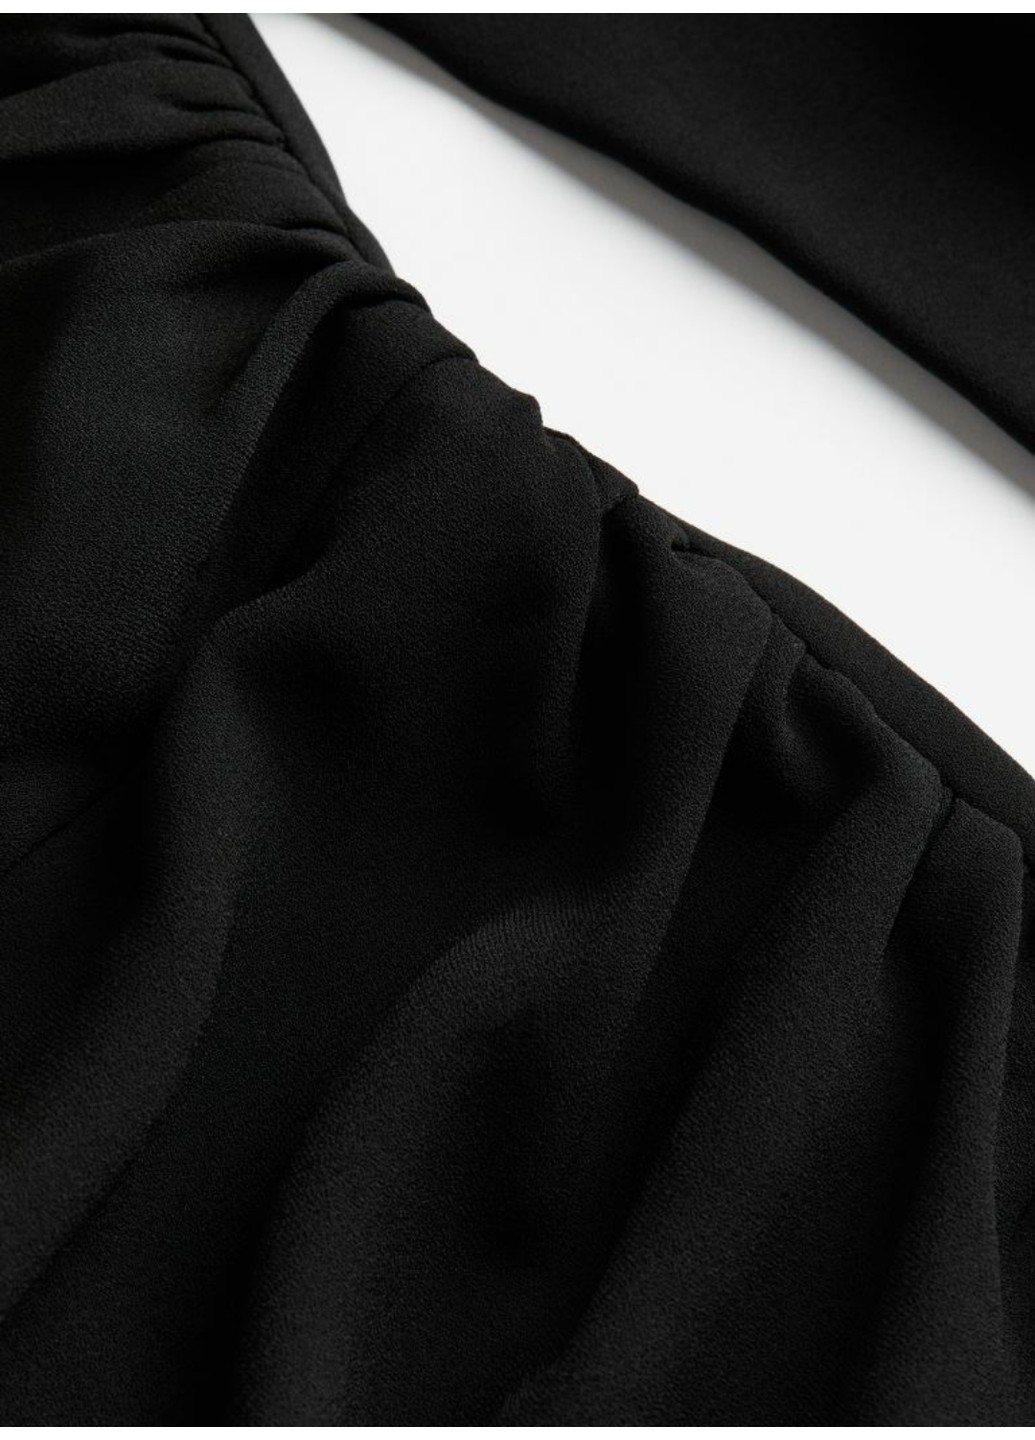 Черное коктейльное женское платье плиссе с перекрестком н&м (56422) xs черное H&M